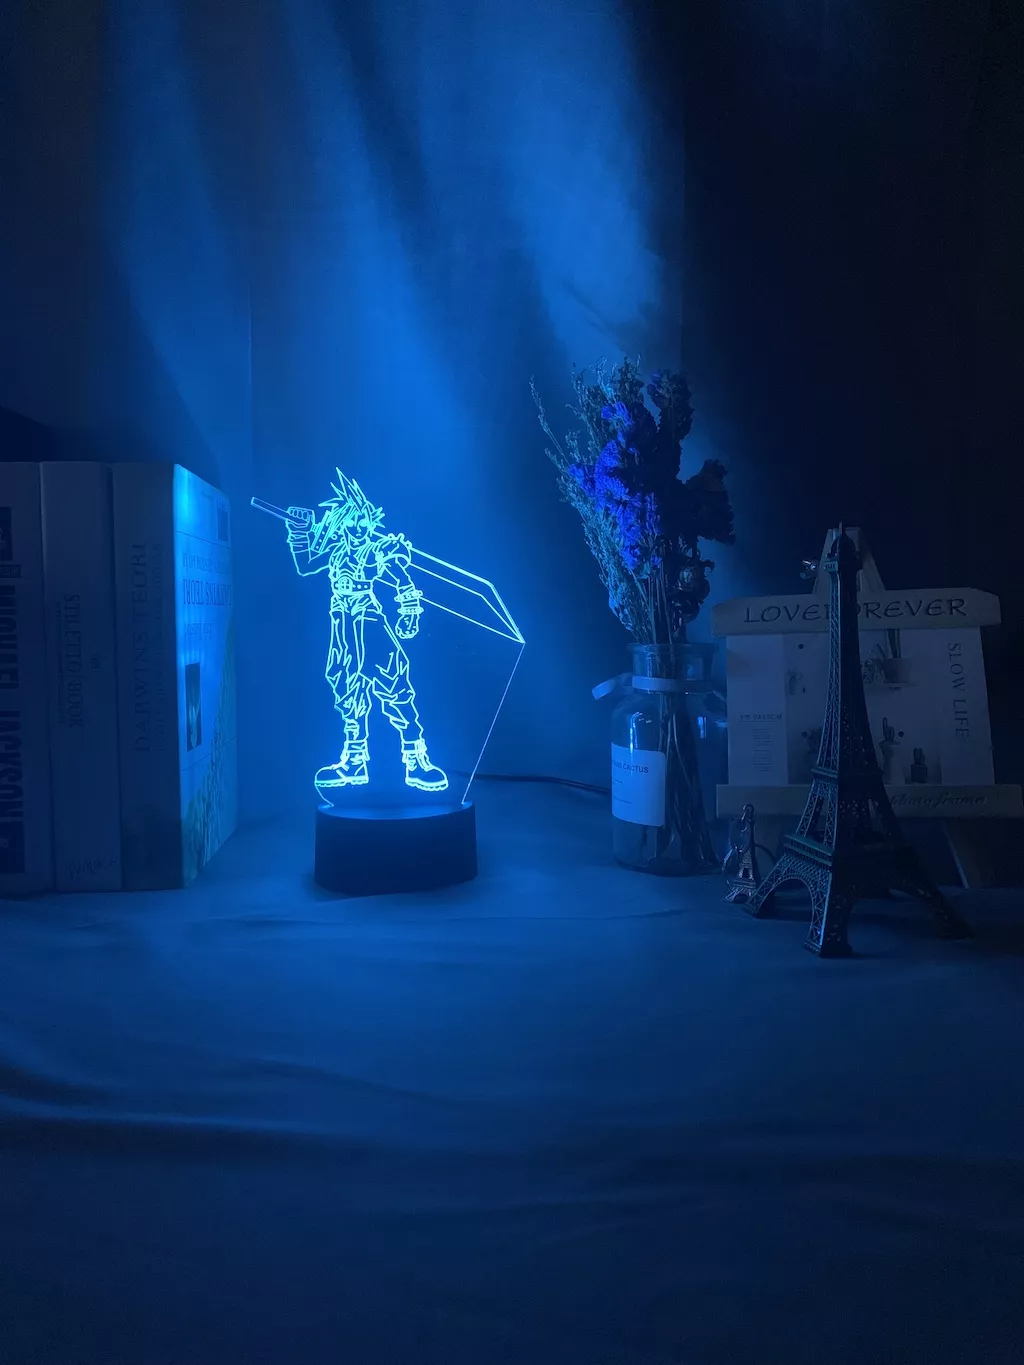 129730889 1 Luminária Final Fantasy luz noturna em led 3d, crianças, luz noturna colorida para decoração de quarto, usb, lâmpada de mesa, jogo final, presente fantasia